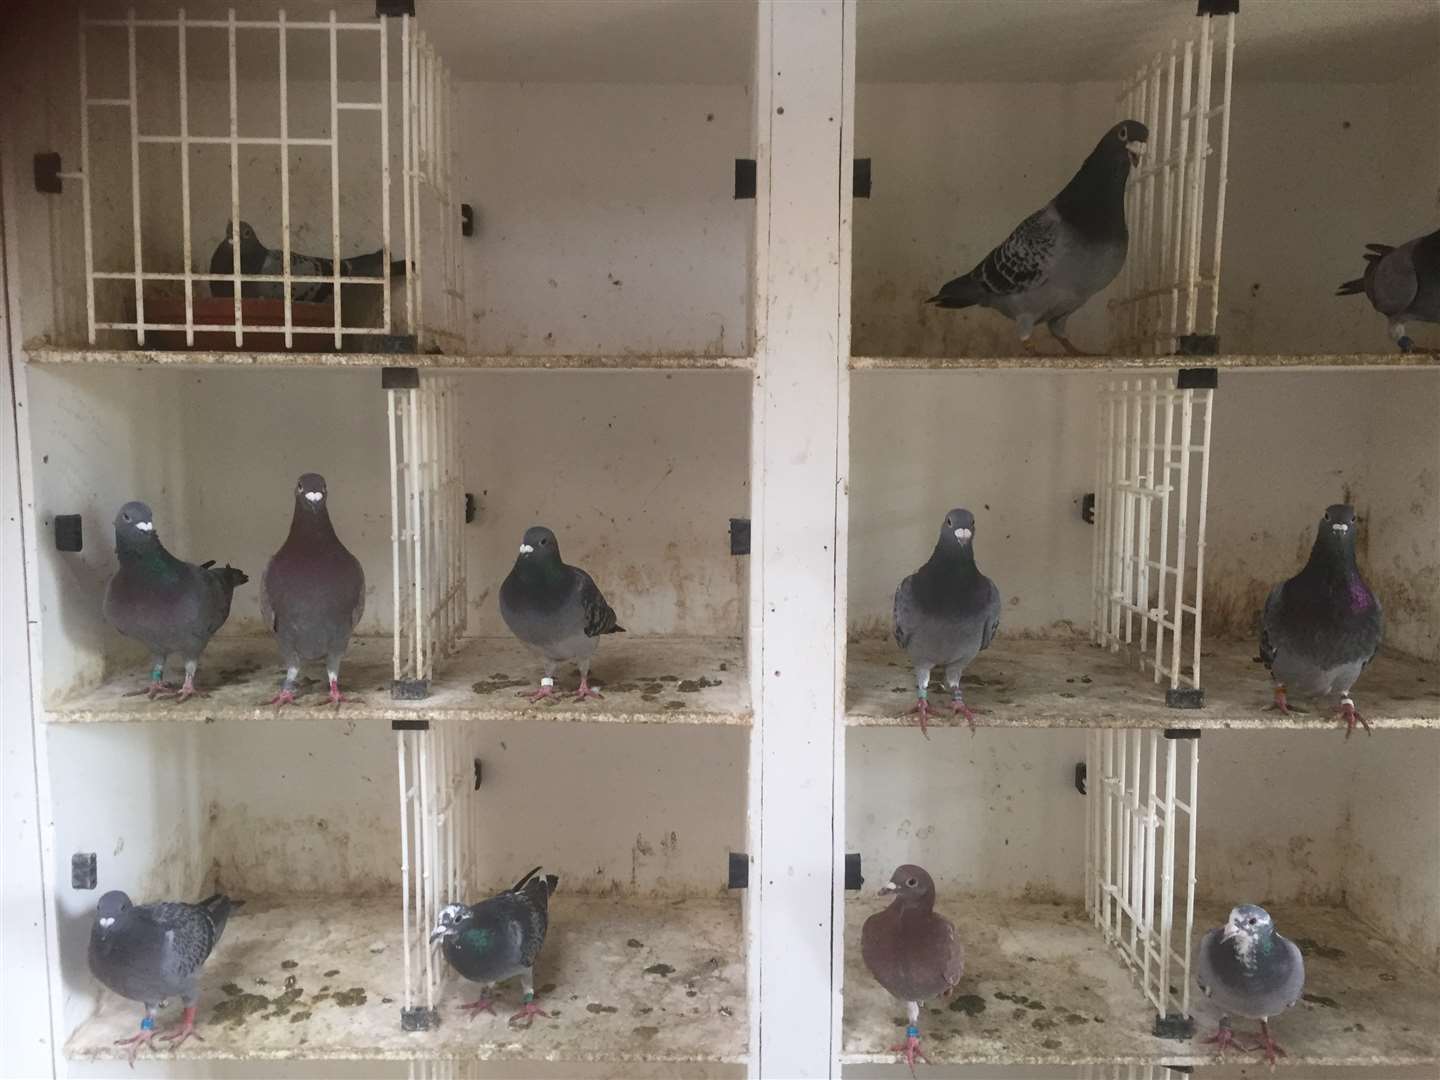 Mr Smith kept 27 racing pigeons.